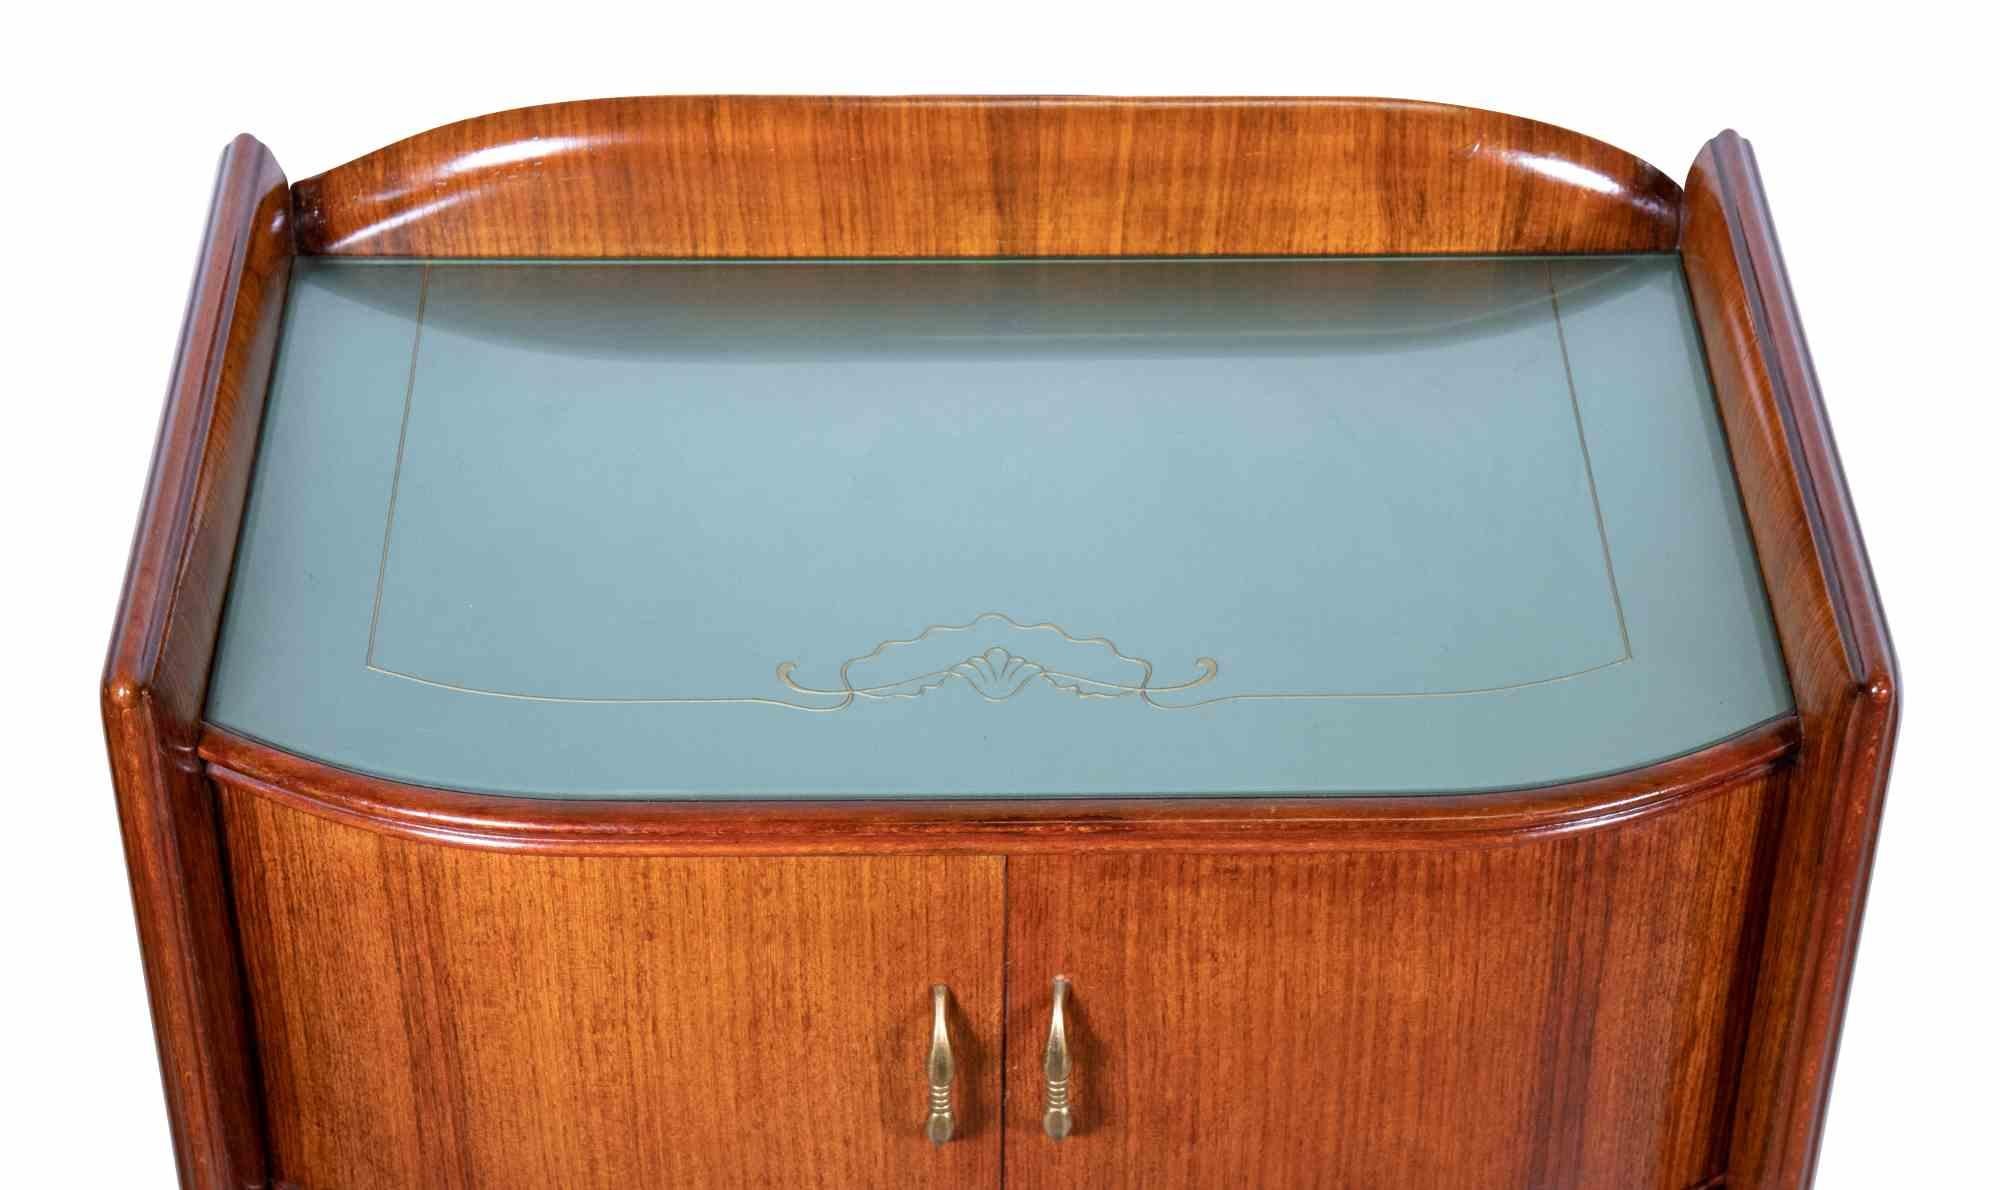 La paire de tables de chevet est un objet de design original réalisé dans les années 1970 par Vittorio Dassi.

Un couple élégant de tables de chevet en bois avec plateau décoratif.

Les créations de Vittorio Dassi (1893-1973), réalisées dans les